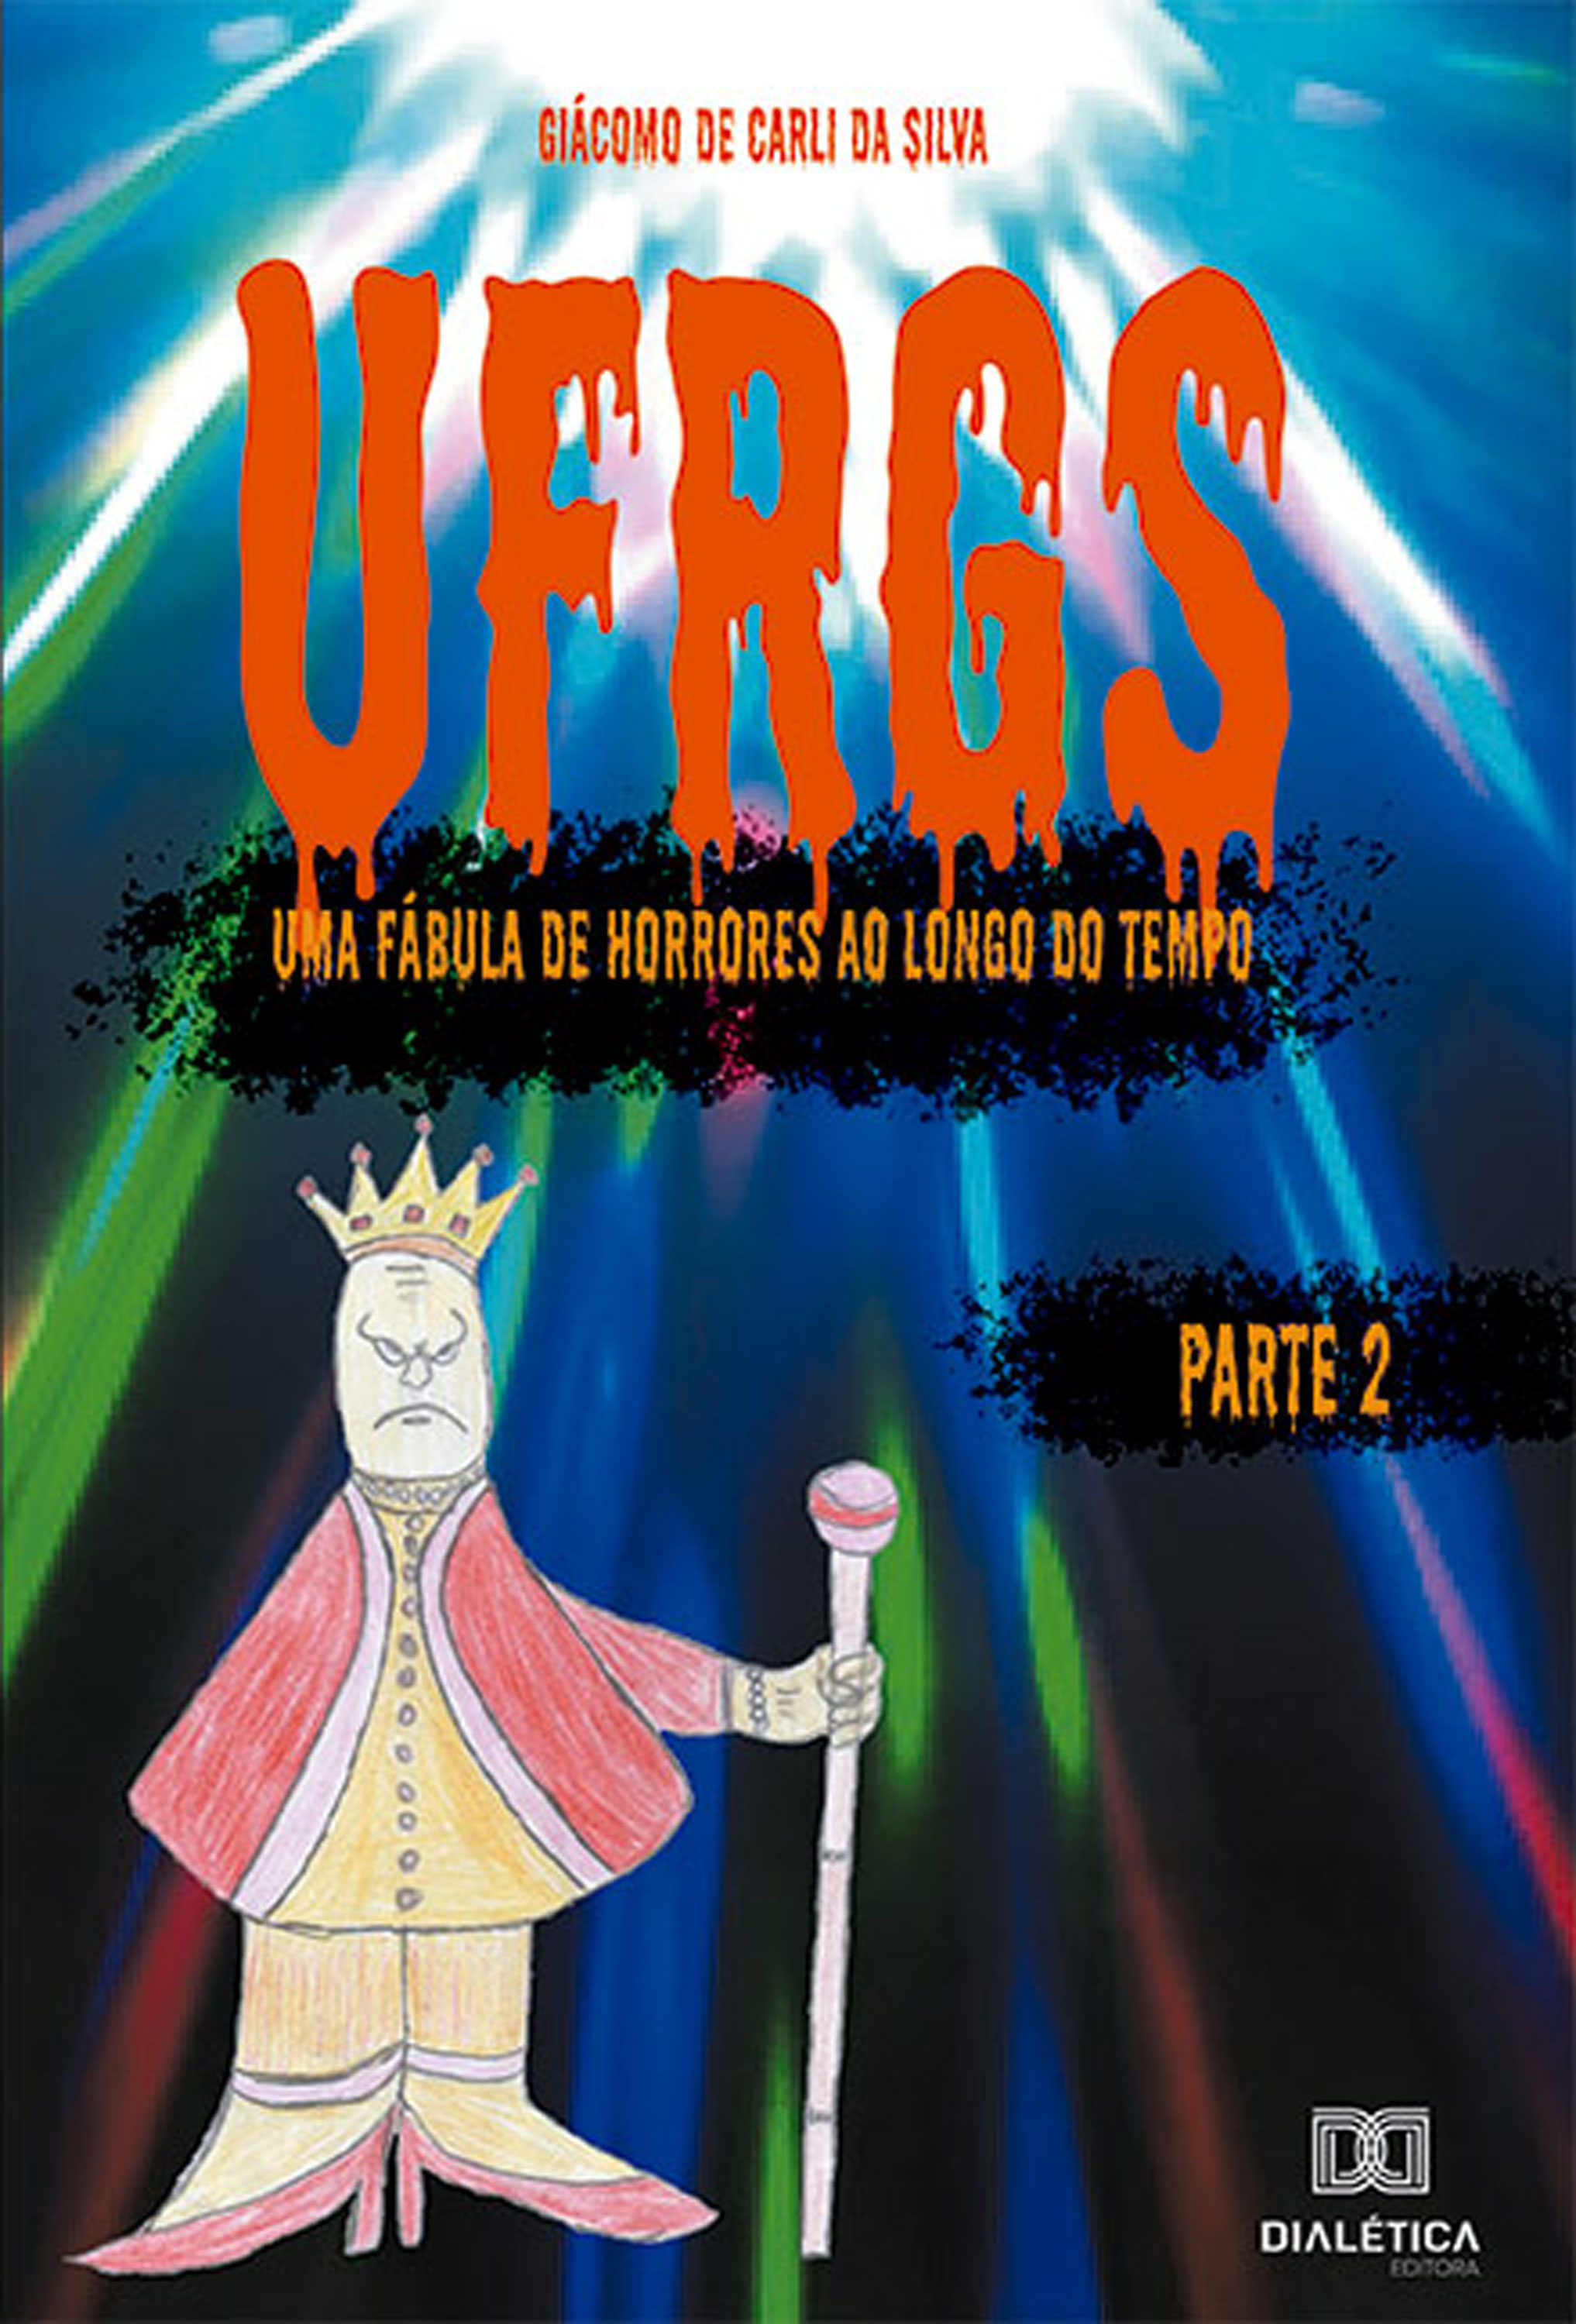 UFRGS - Volume 2